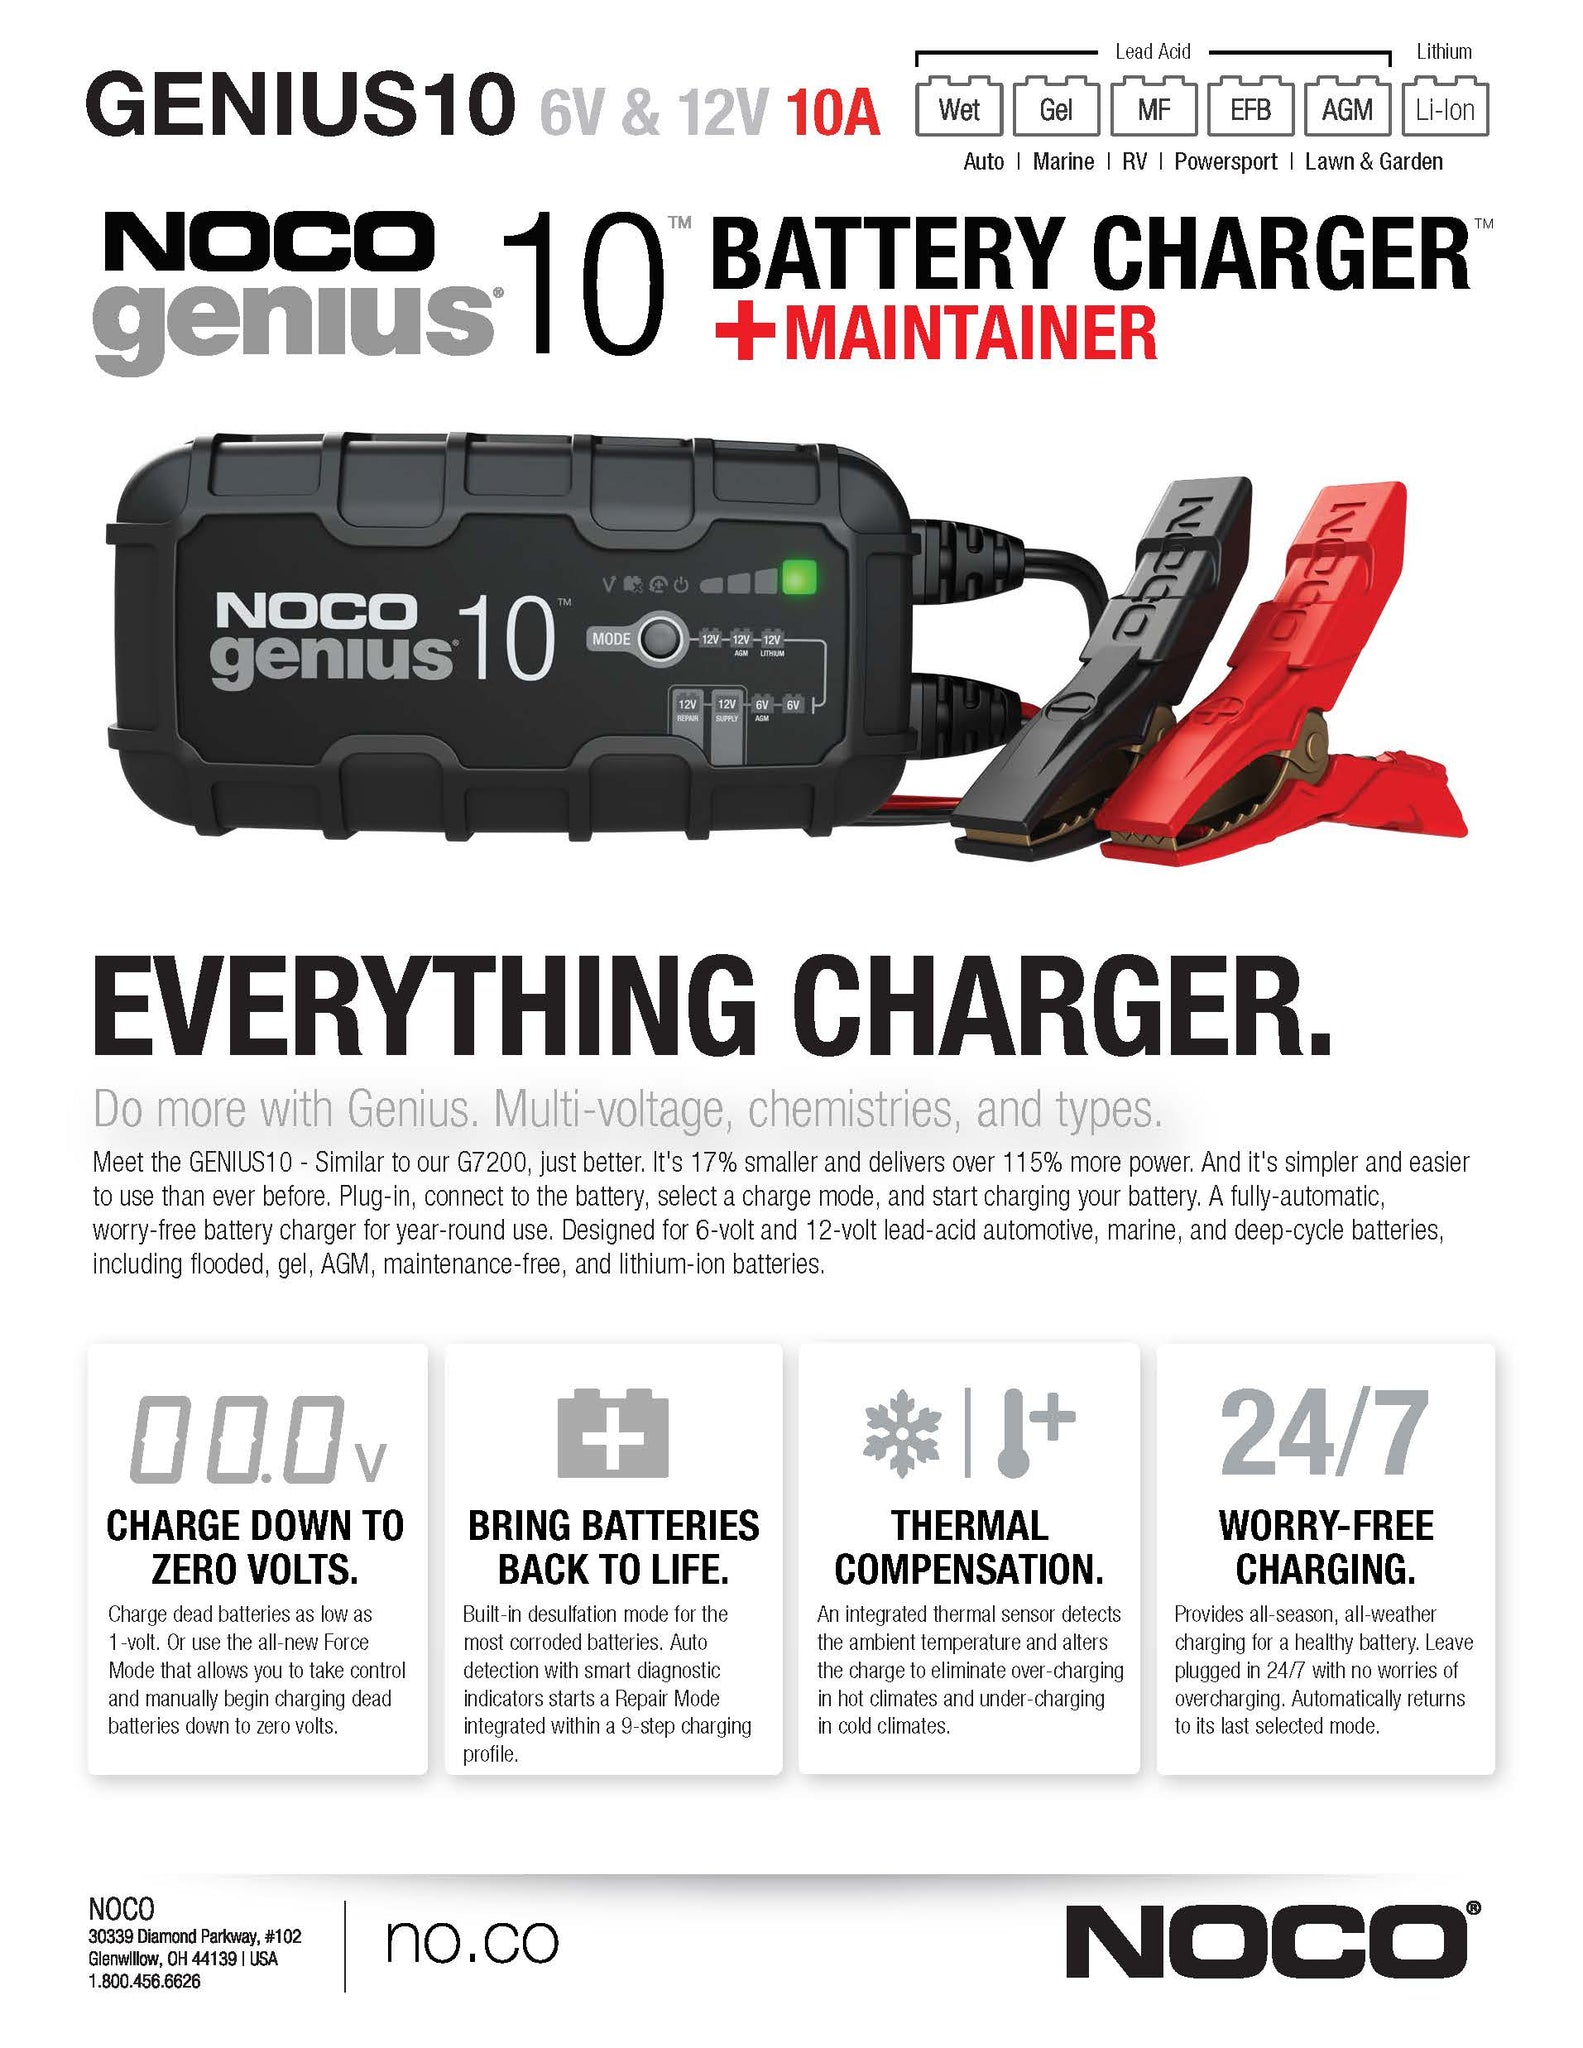 Noco Genius 10 Genius Series 10A 6-volt/12-volt battery charger